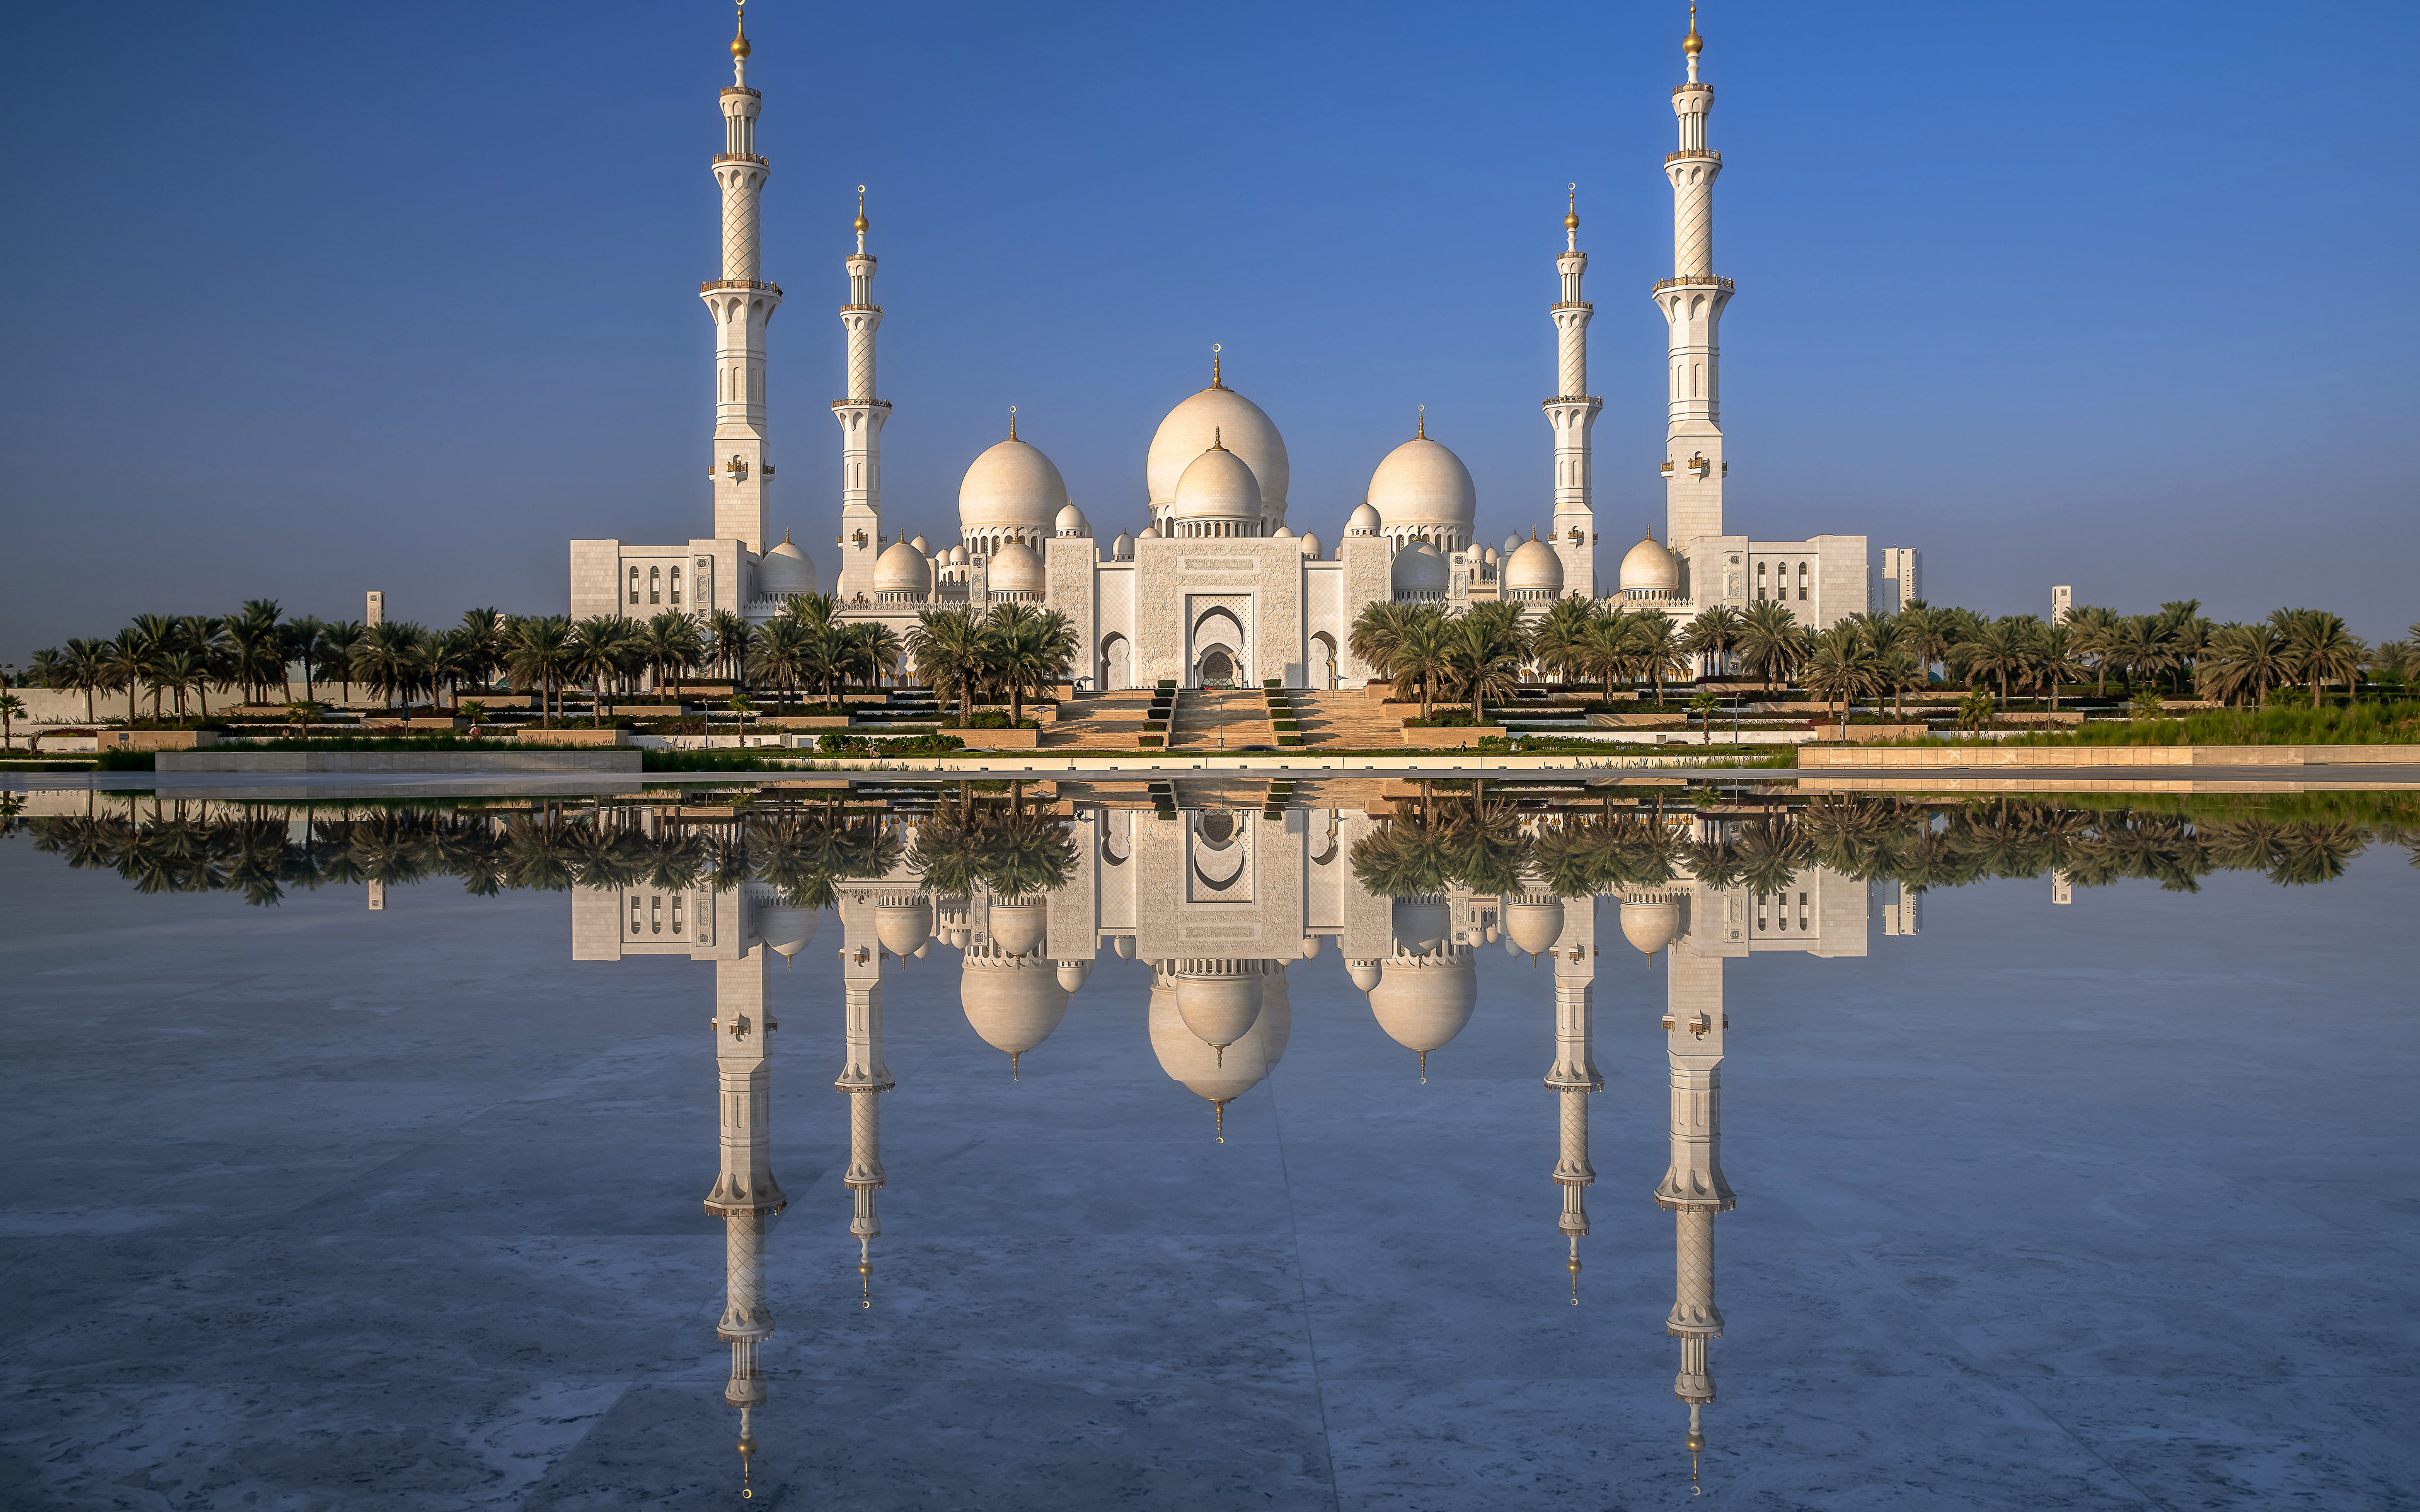 Bakgrunnsbilder Moské De forente arabiske emirater Sheikh Zayed Grand Mosque, Abu Dhabi Refleksjon Byer 3840x2400 reflektert byen en by